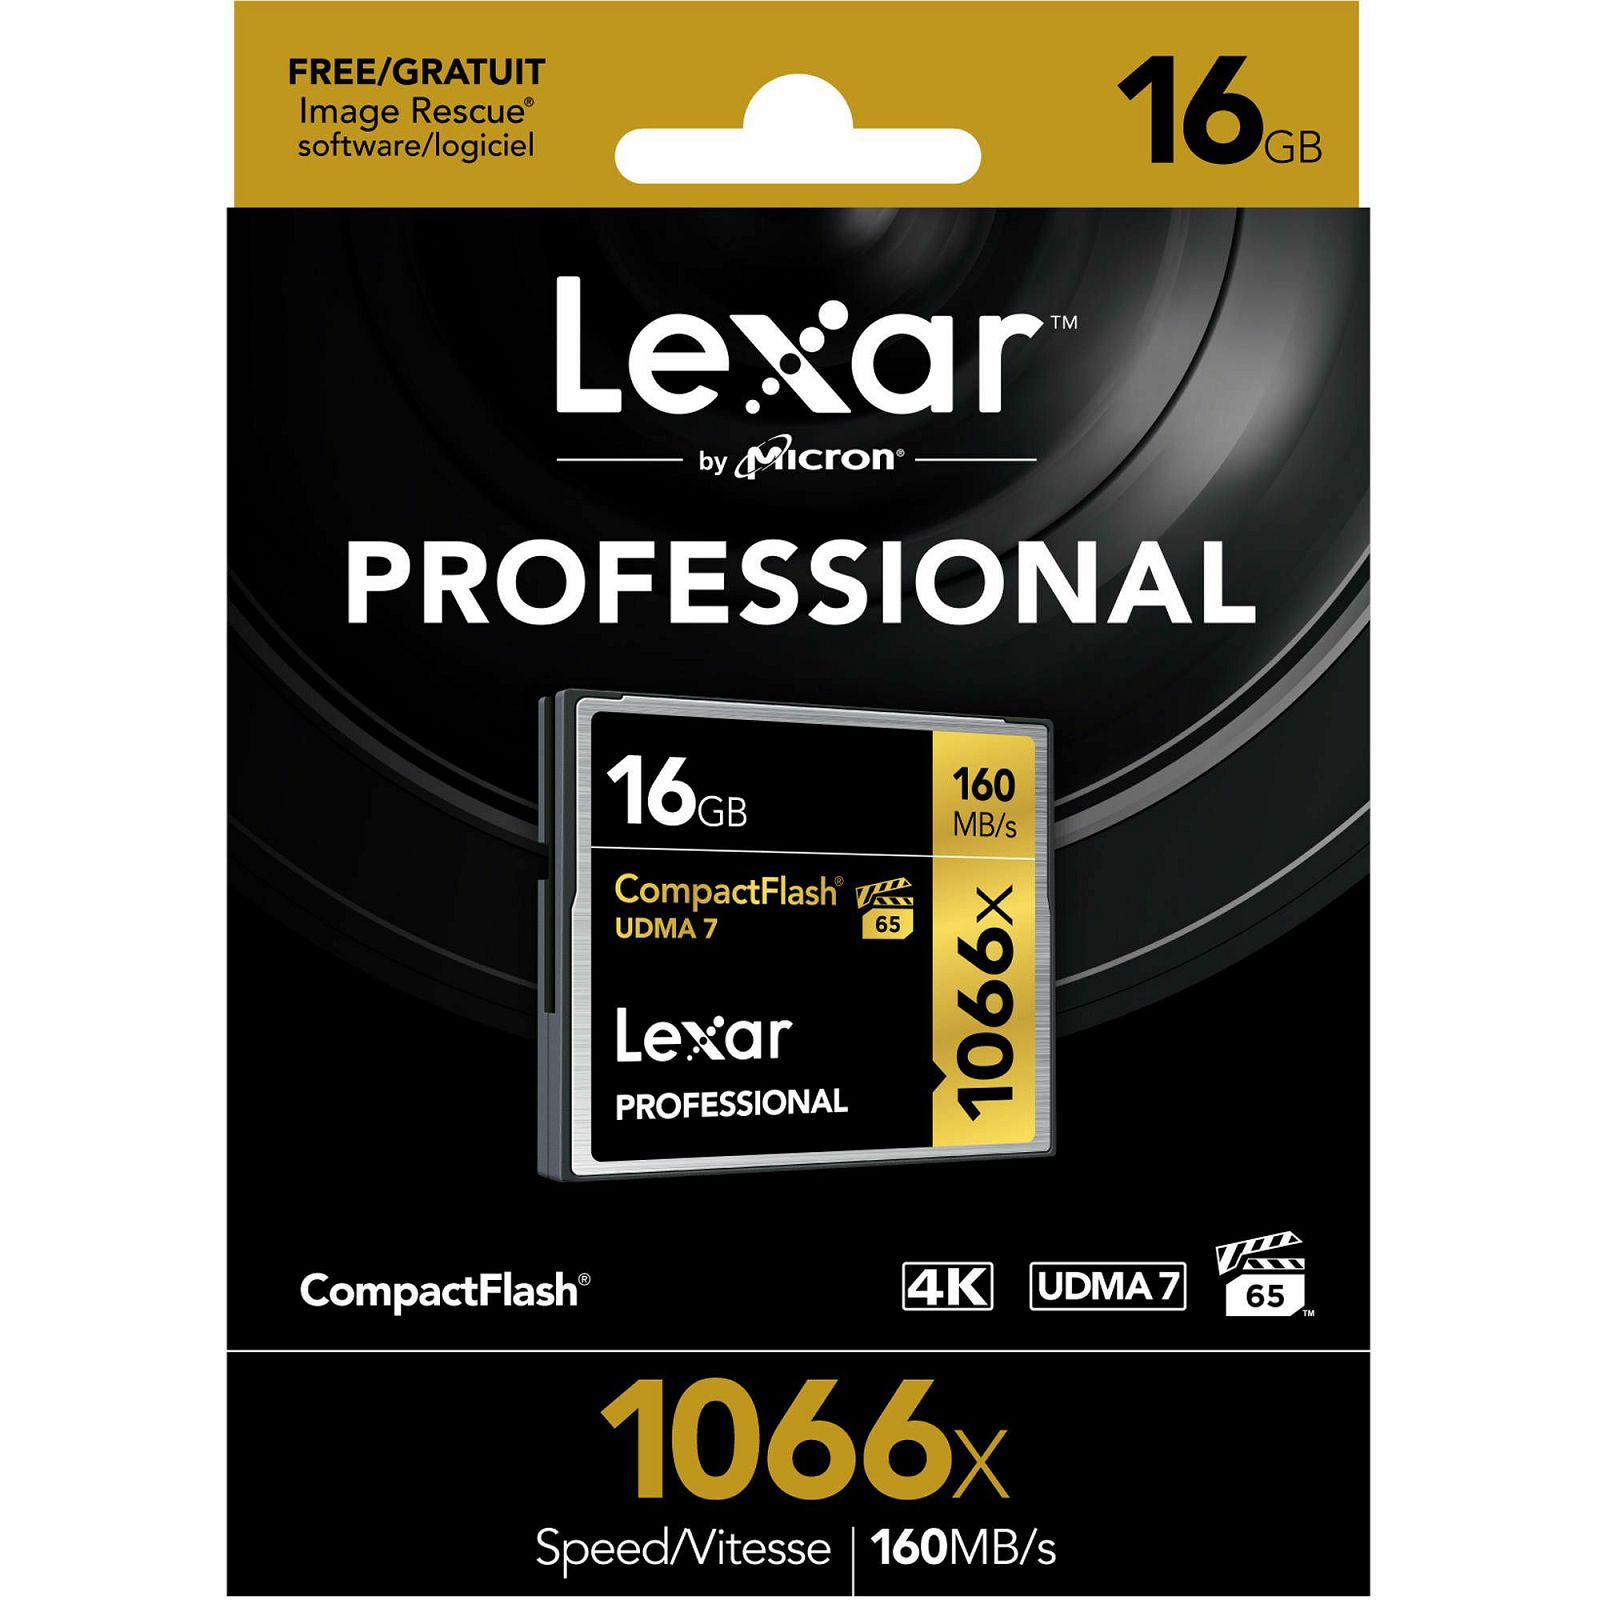 Lexar CF 16GB 1066x 160MB/s Professional UDMA7 Compact Flash Card memorijska kartica (LCF16GCRBEU1066)